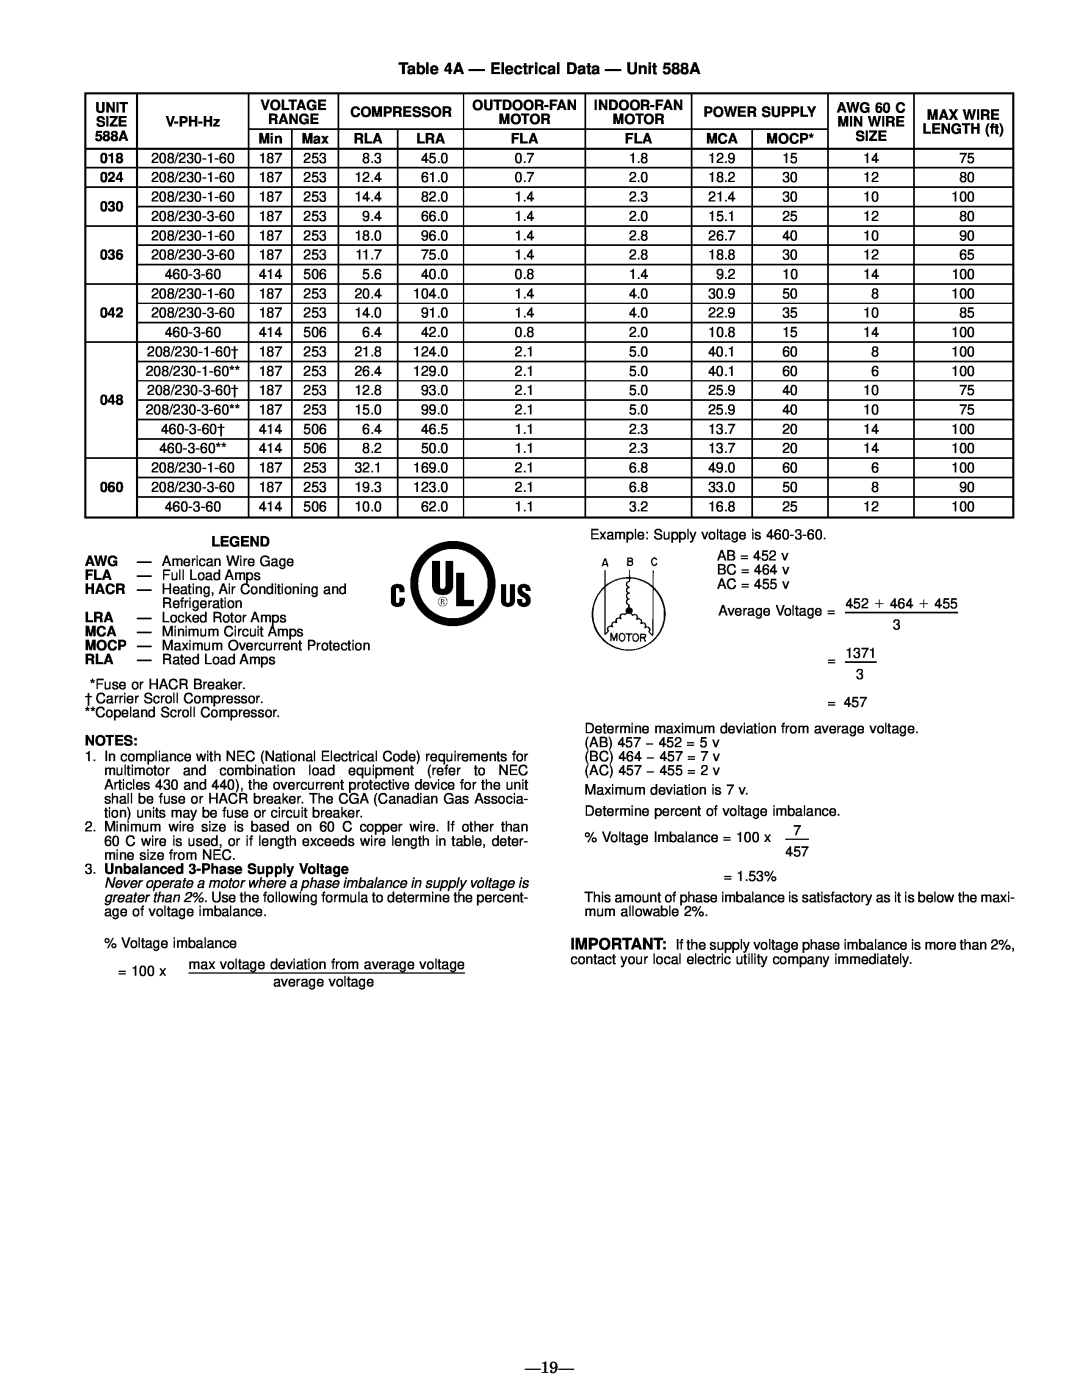 Bryant 589A user manual A Ð Electrical Data Ð Unit 588A, Ð19Ð 